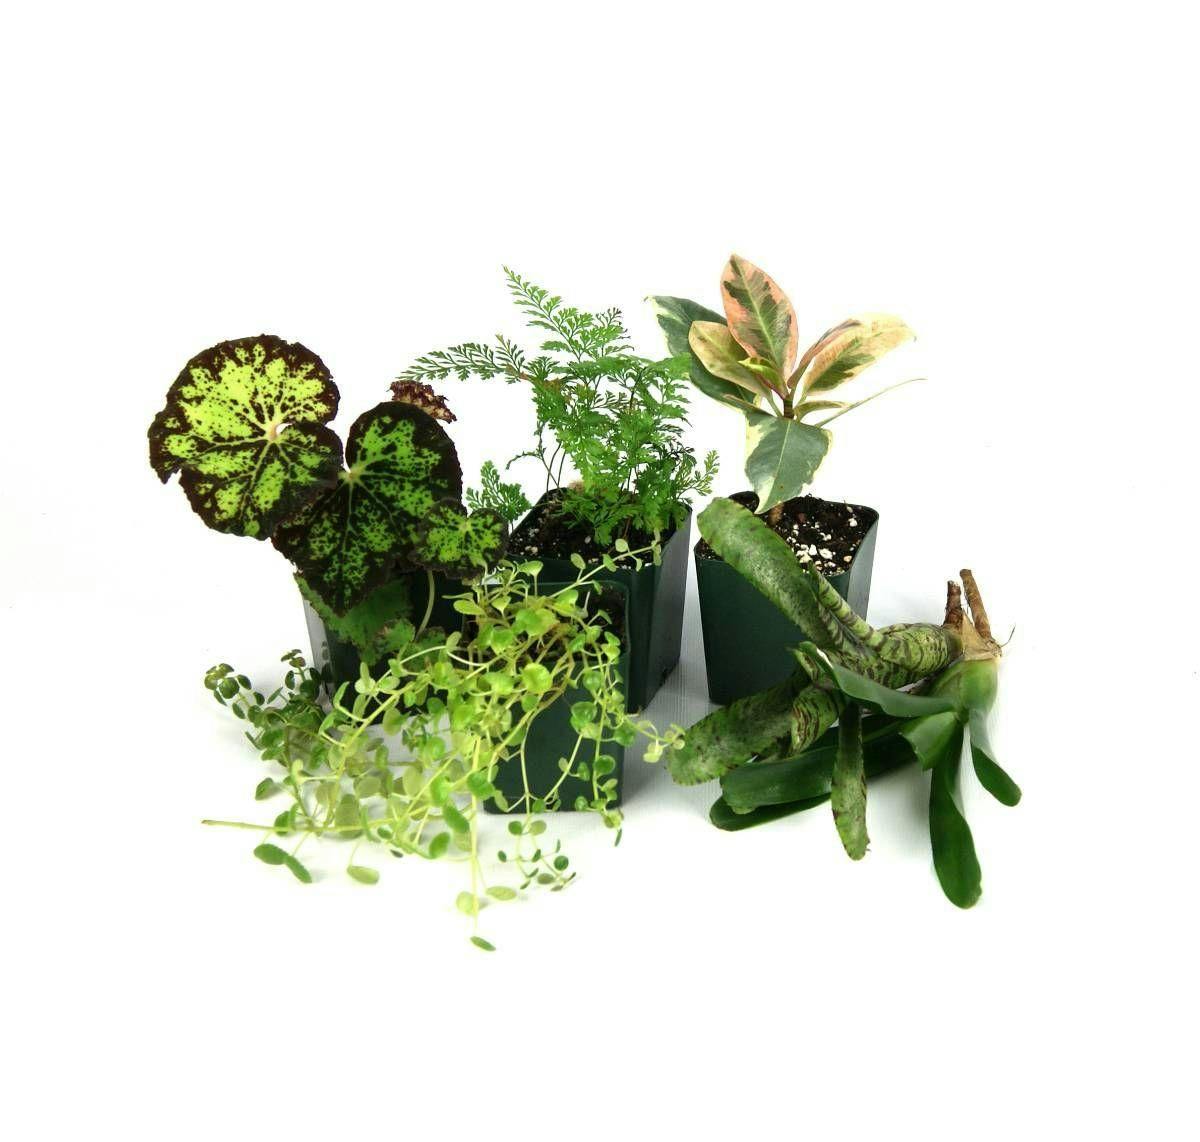 Image for Tropical Vivarium Plant Kit (6 Plants) by Josh's Frogs